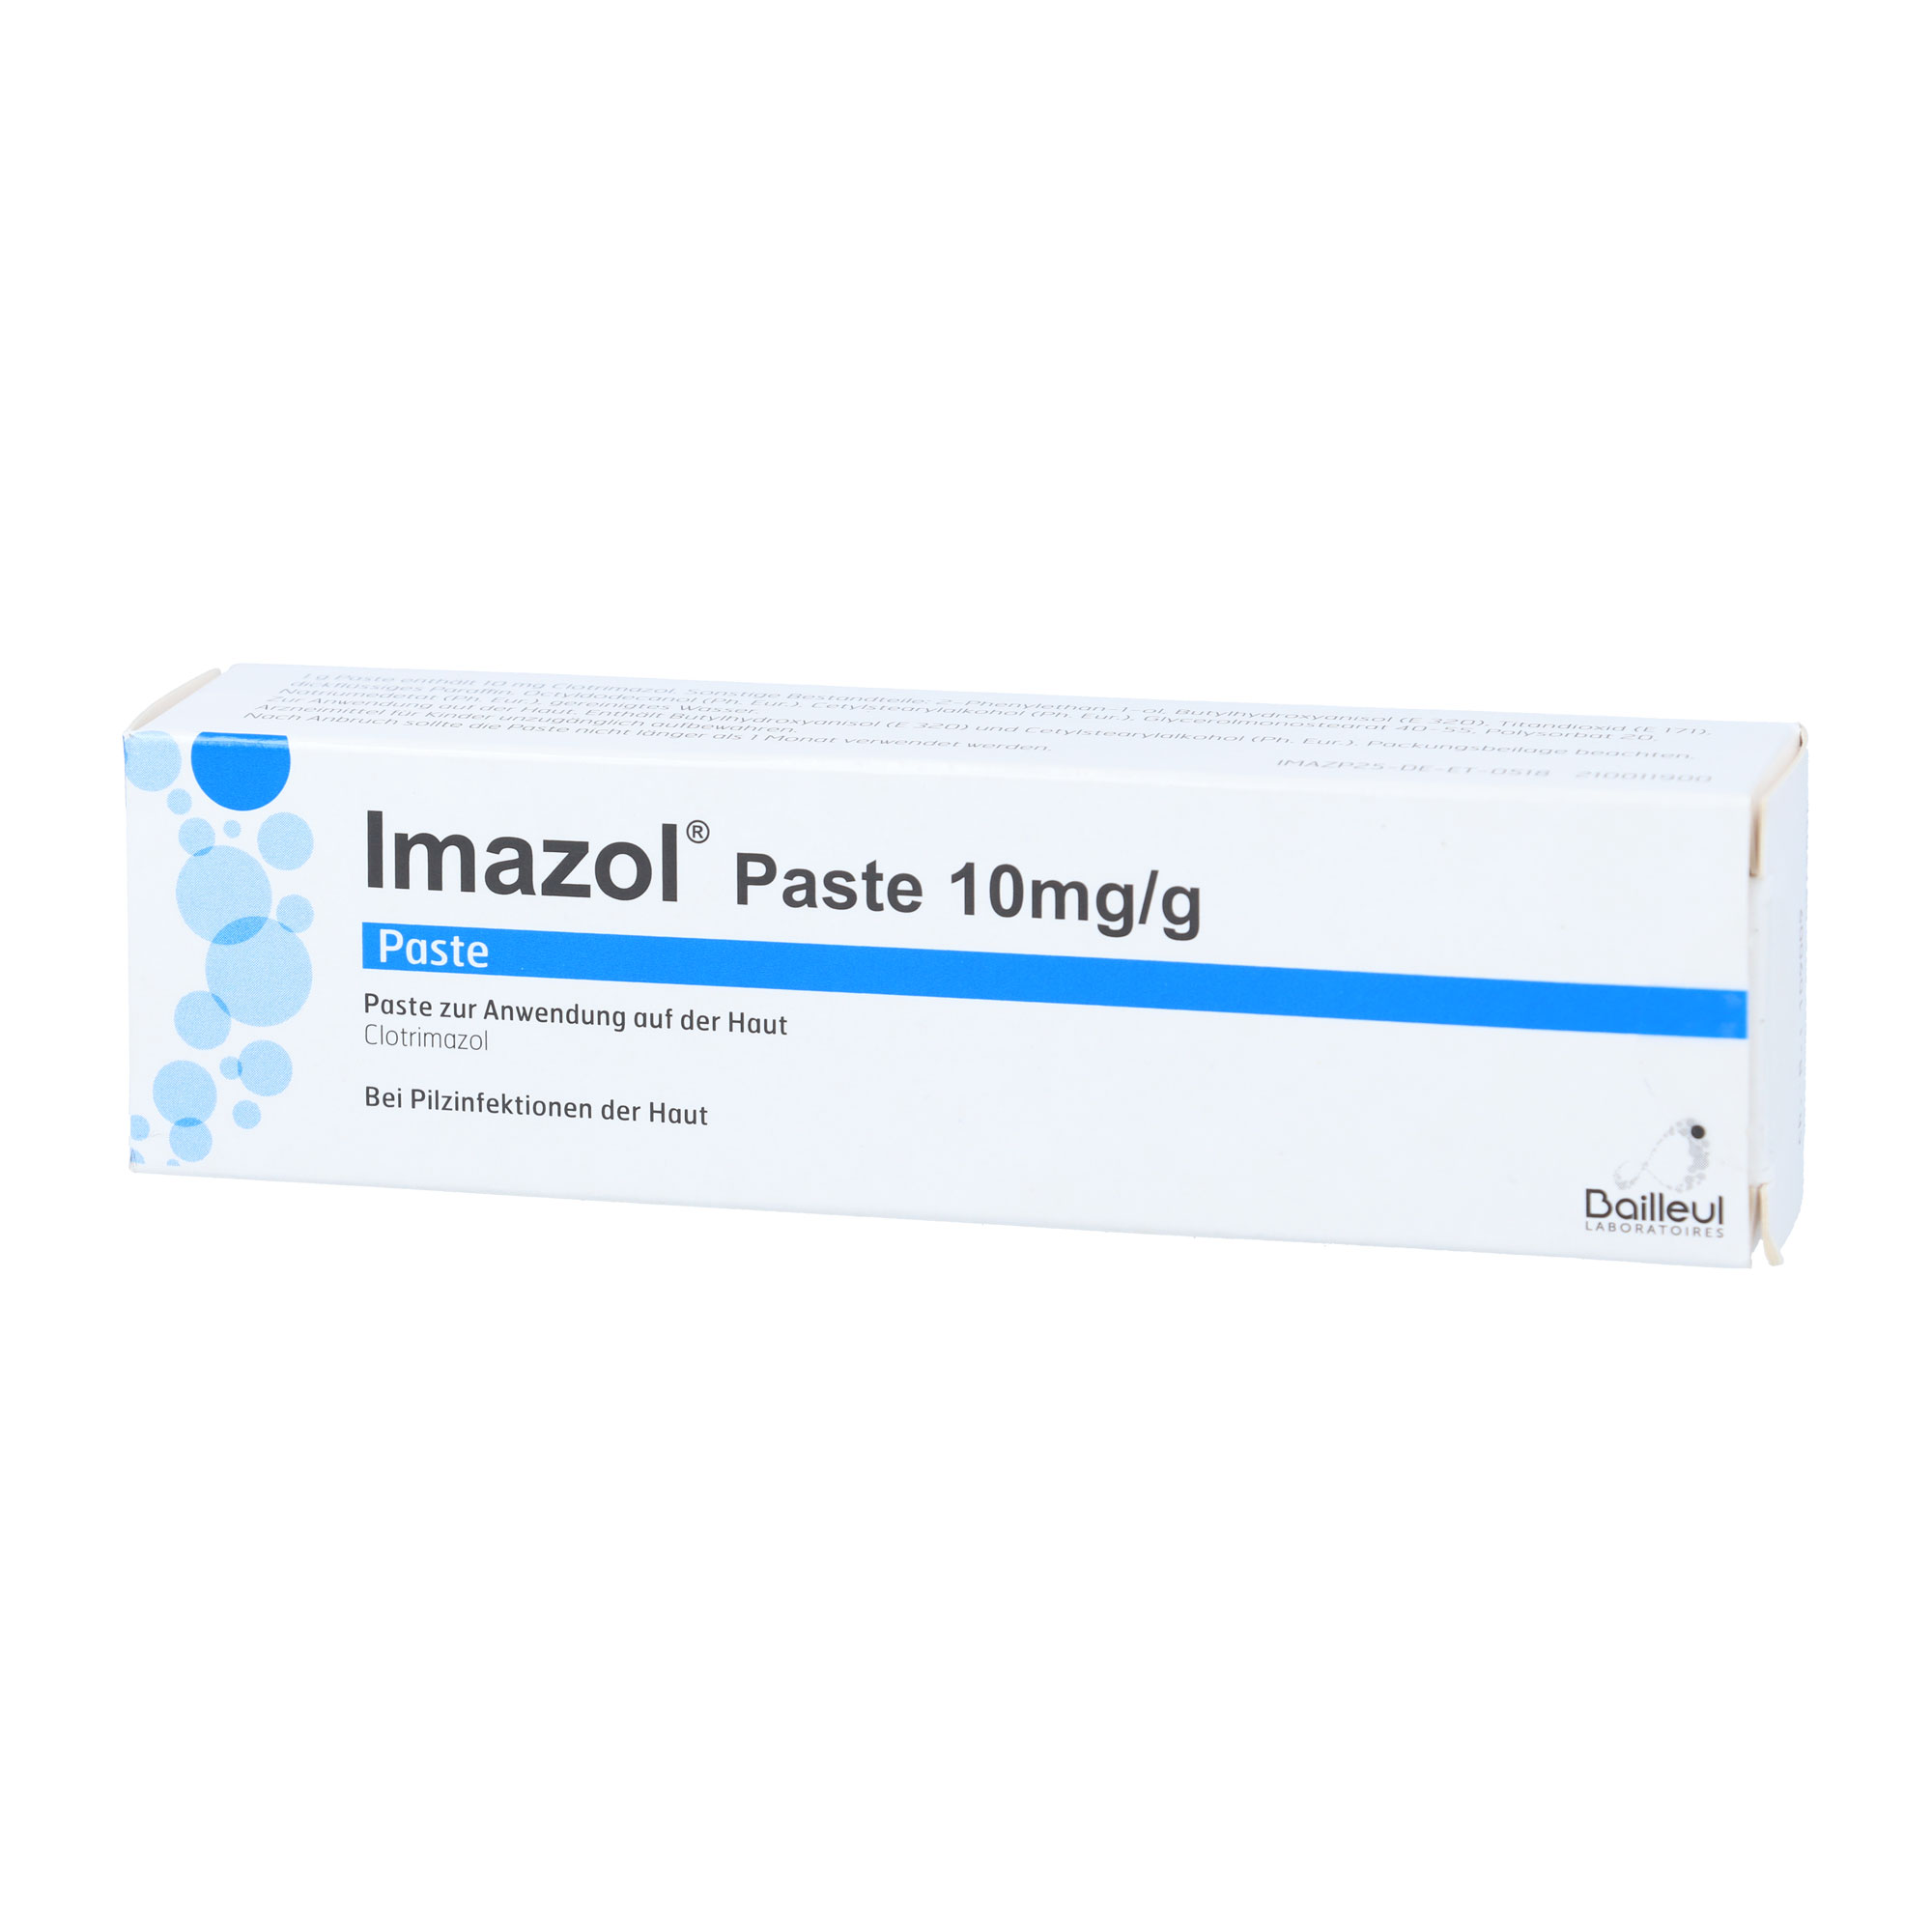 Arzneimittel zur Behandlung von Pilzinfektionen (Mykosen), die mit Clotrimazol behandelt werden können.